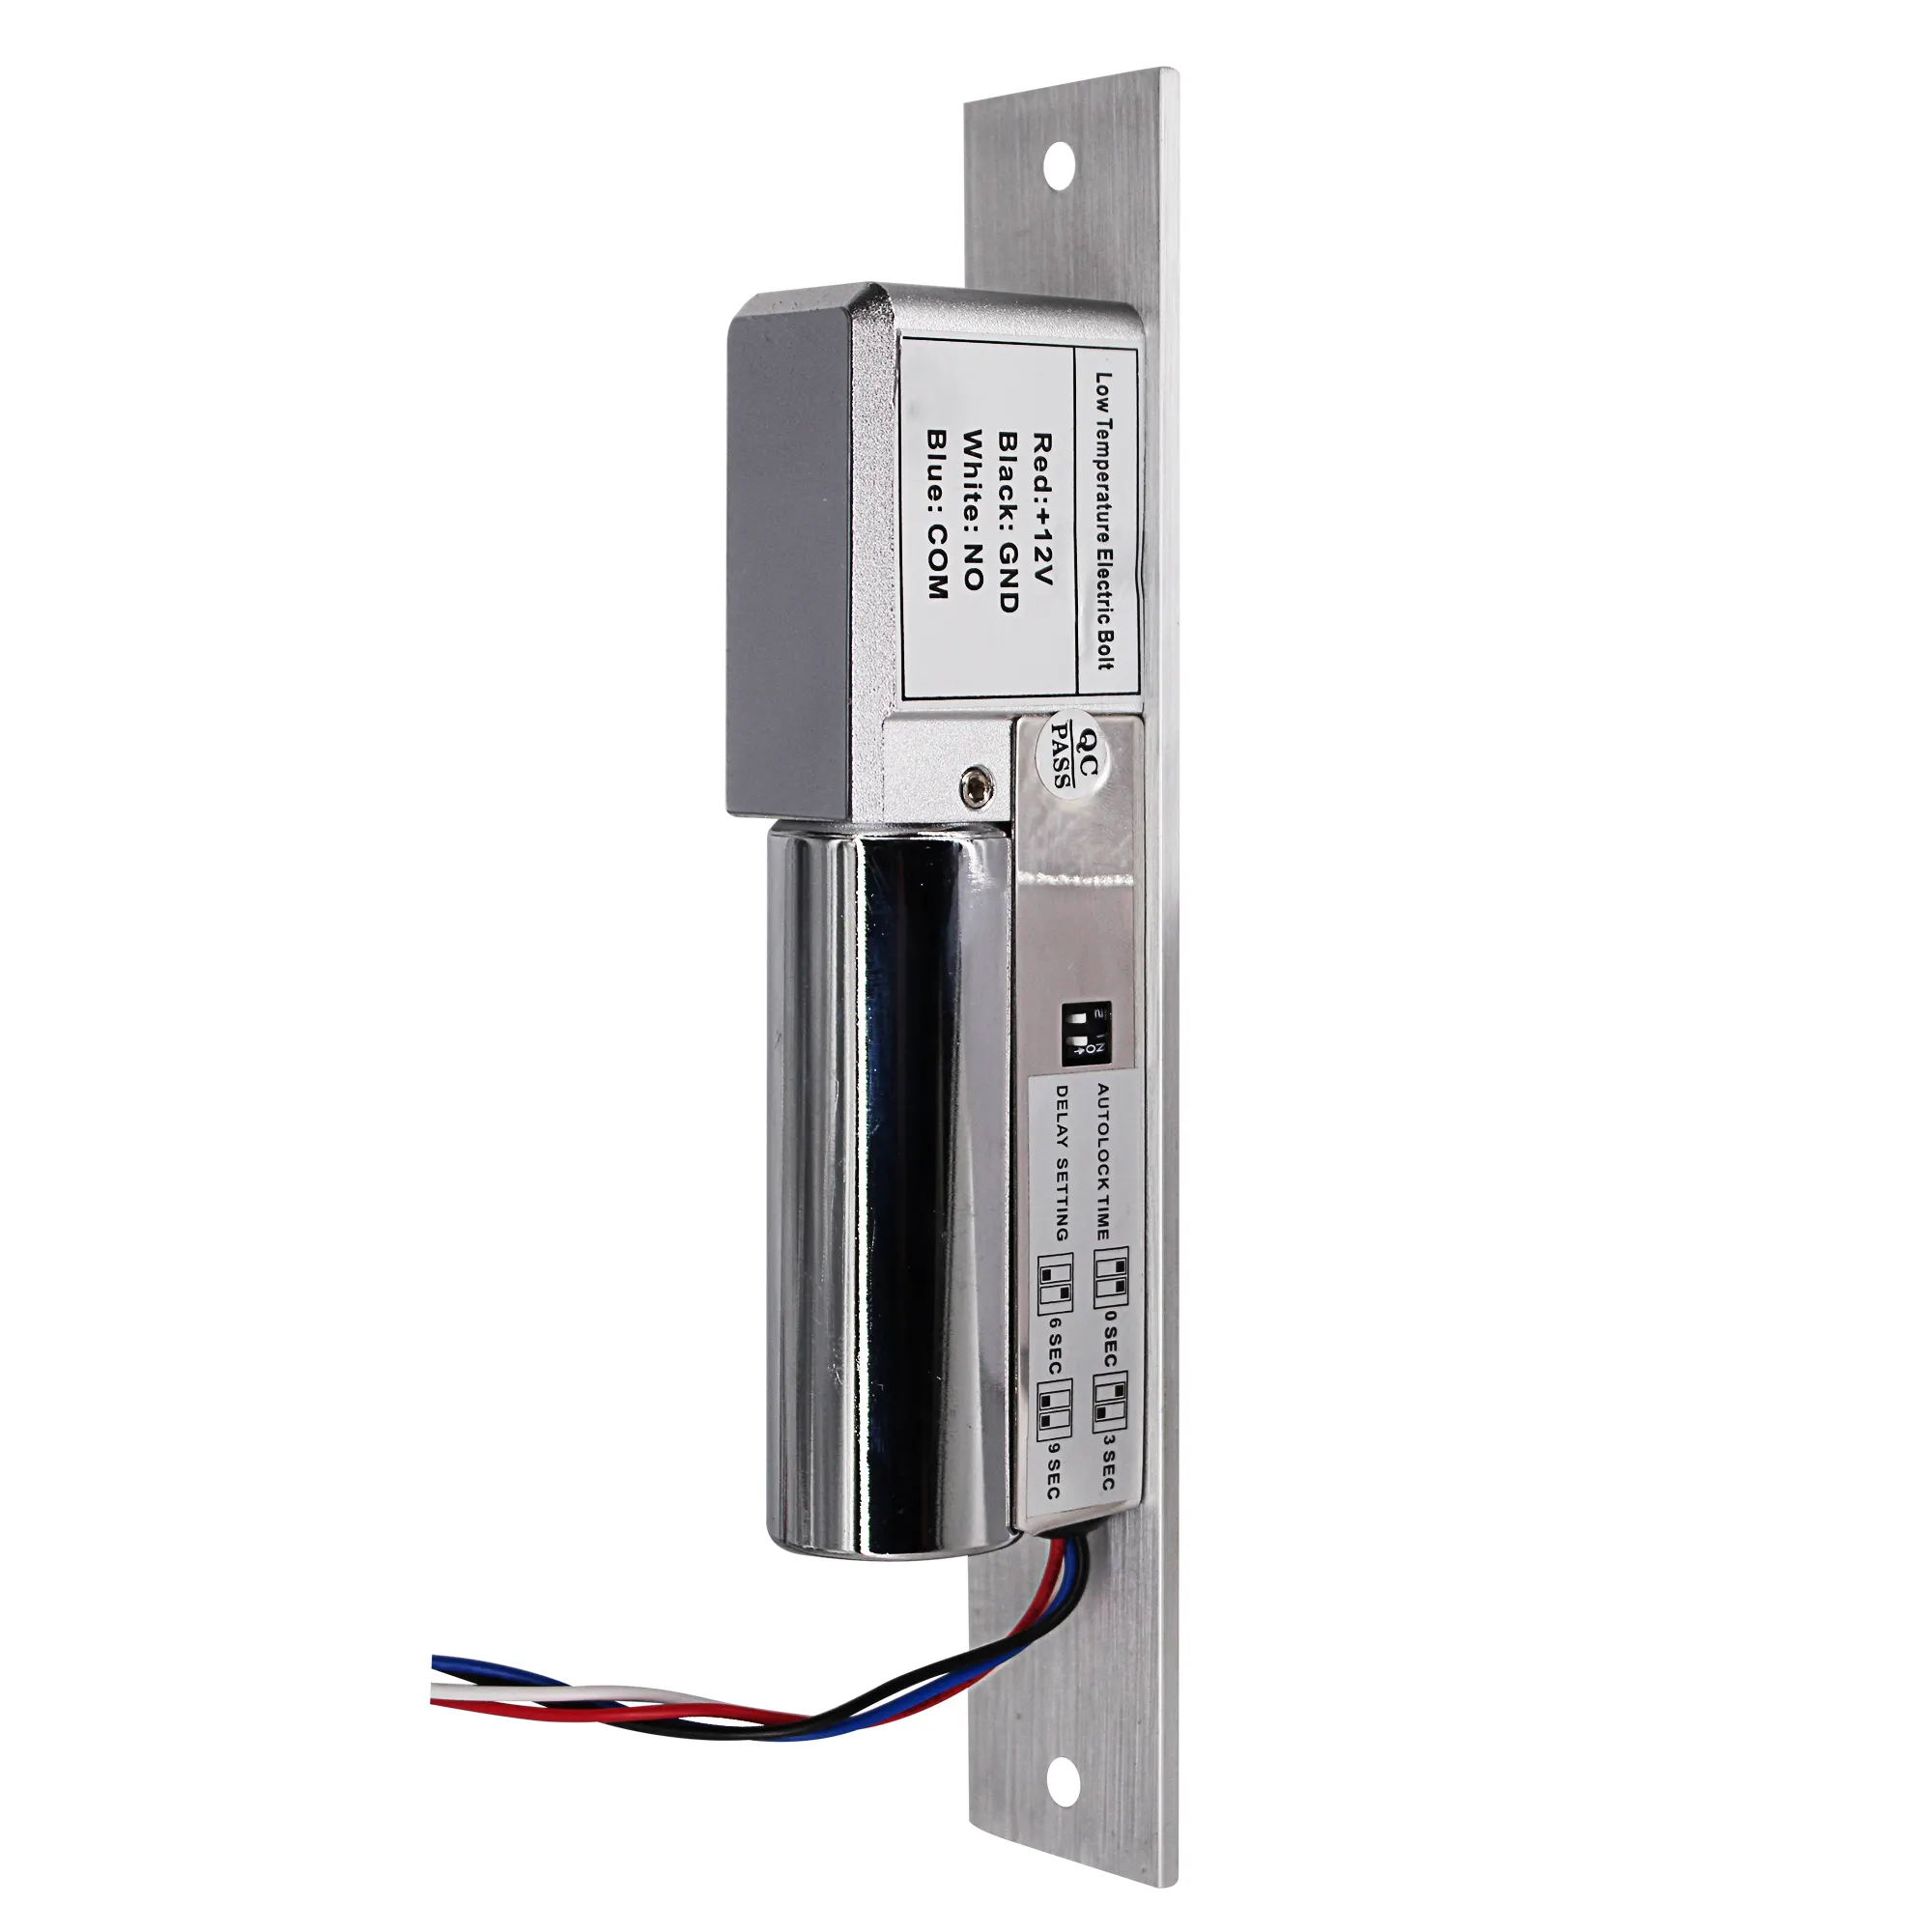 Ucuz fiyat c-grev 2 alüminyum malzeme elektrikli cıvata kilitleri kapılar için stokta güvenli kapı grev başarısız